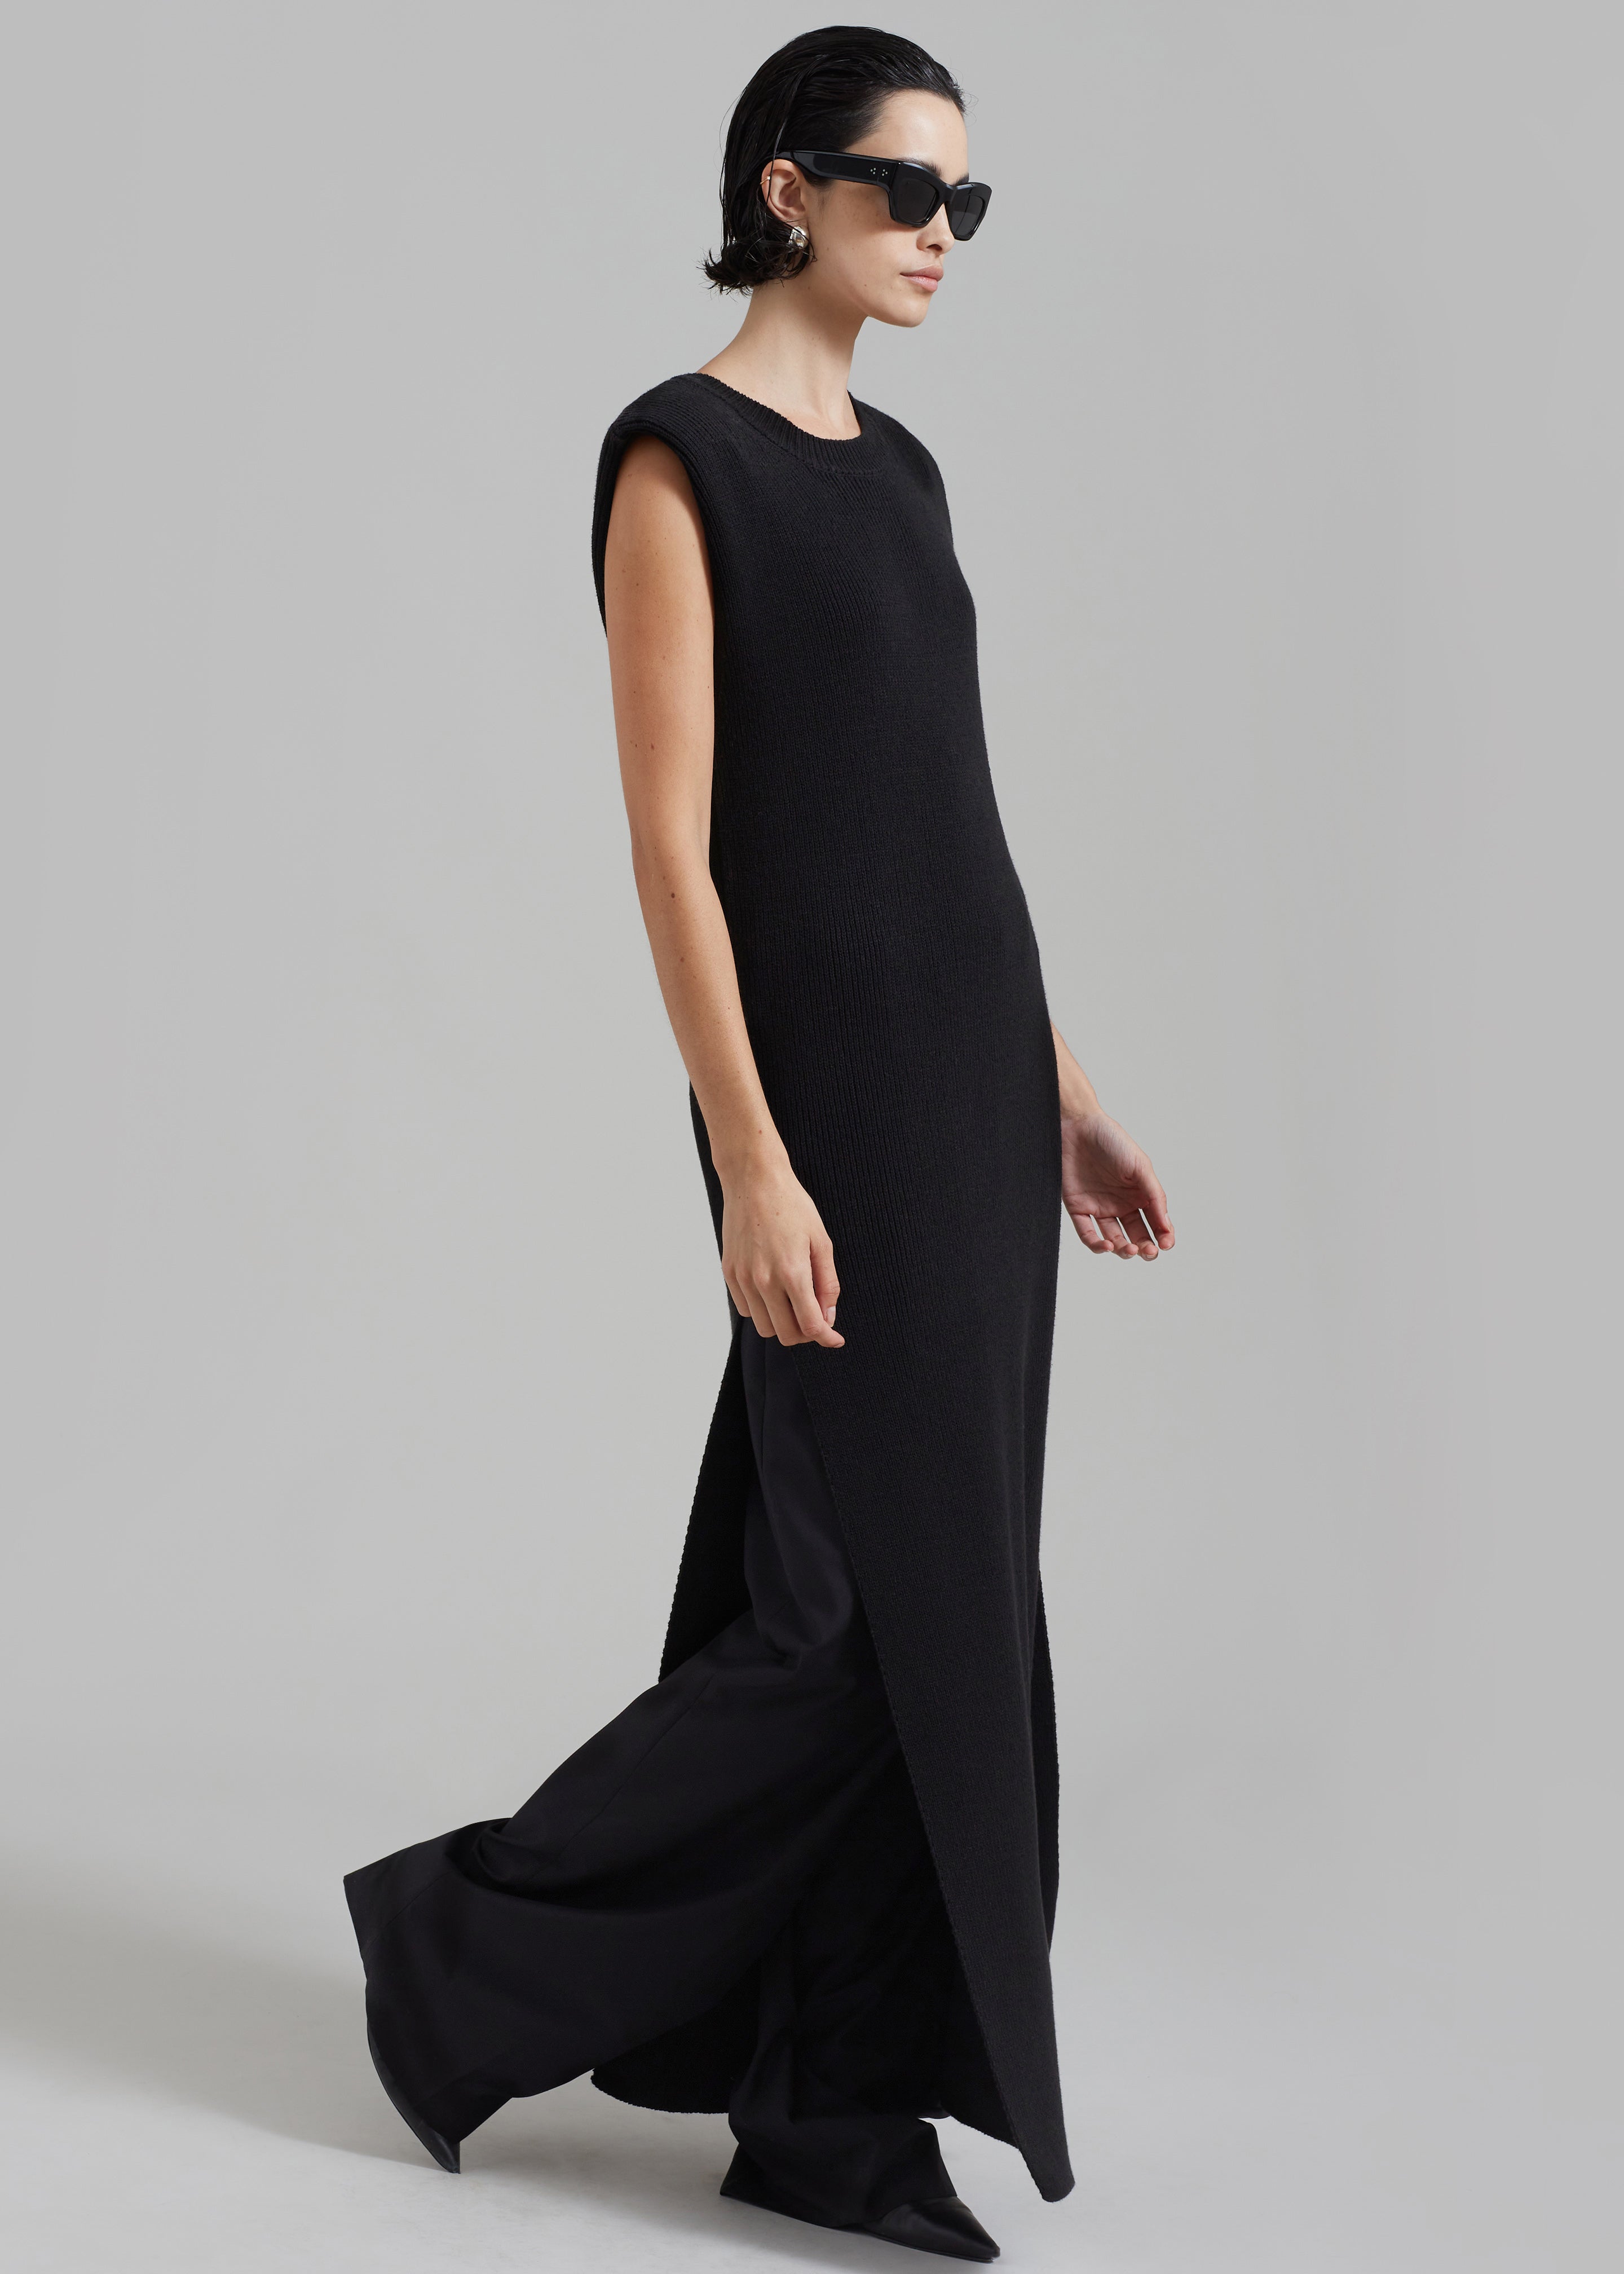 Wren Sleeveless Knit Dress - Black - 10